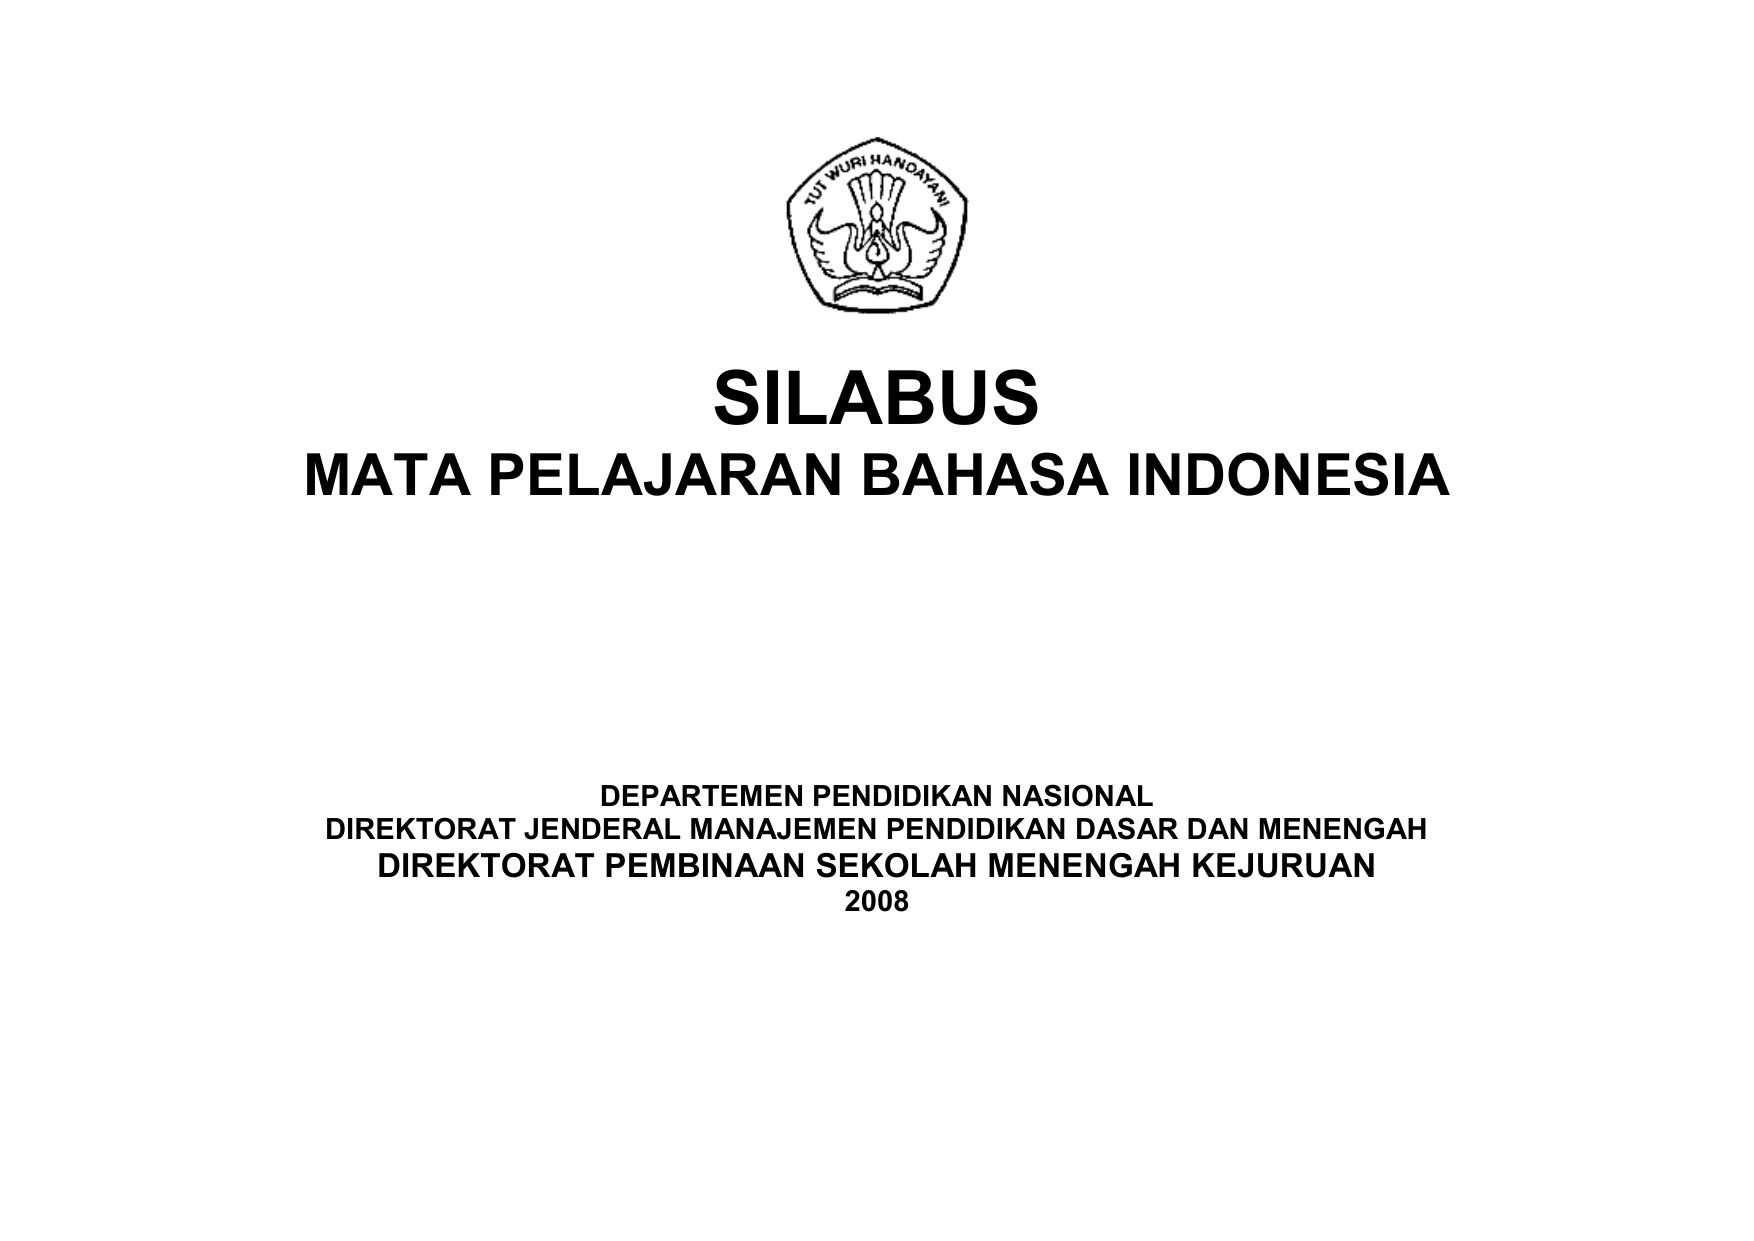 SILABUS MATA PELAJARAN BAHASA INDONESIA DEPARTEMEN PENDIDIKAN NASIONAL DIREKTORAT JENDERAL MANAJEMEN PENDIDIKAN DASAR DAN MENENGAH DIREKTORAT PEMBINAAN